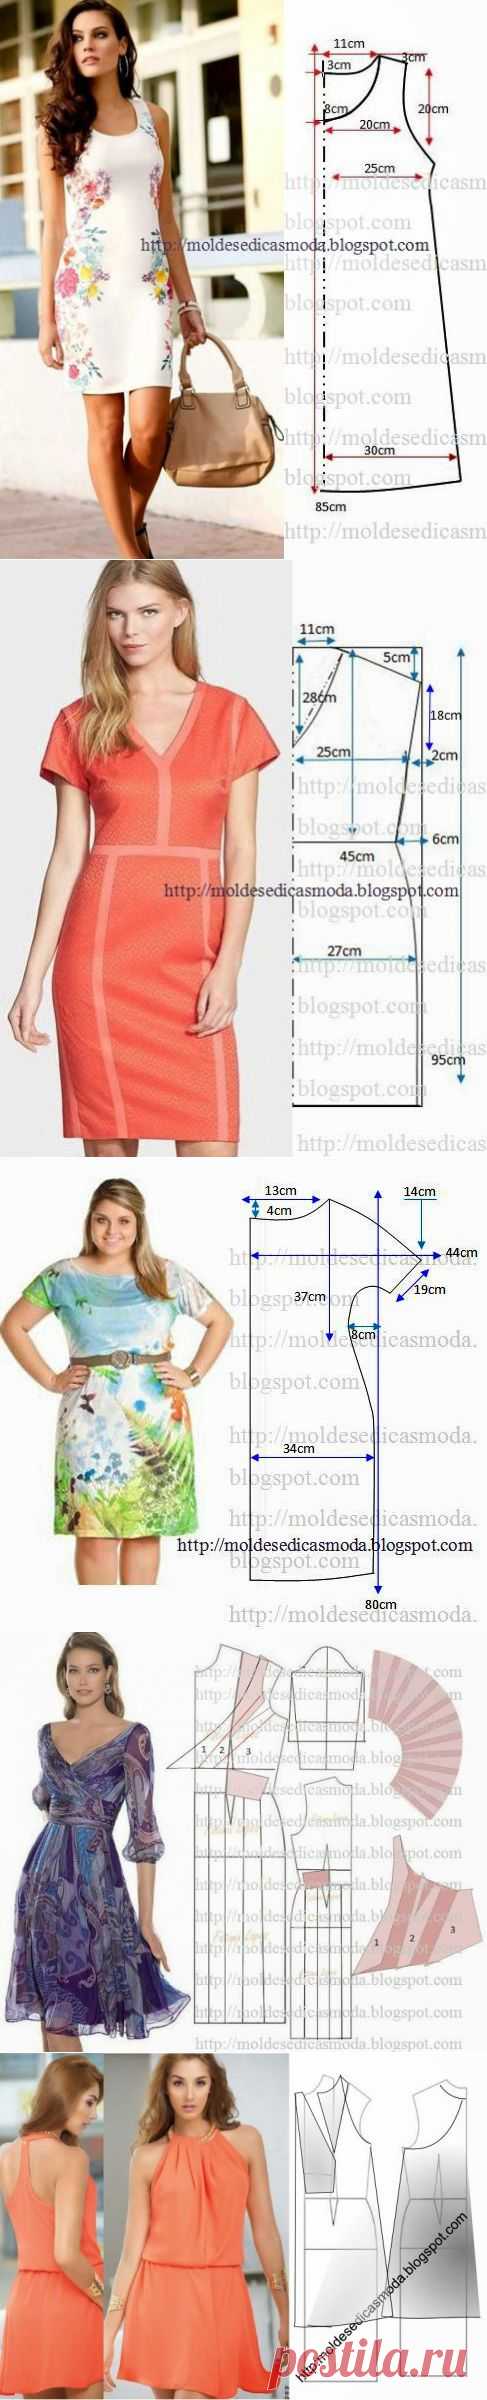 Моделирование женской одежды.(5 часть)